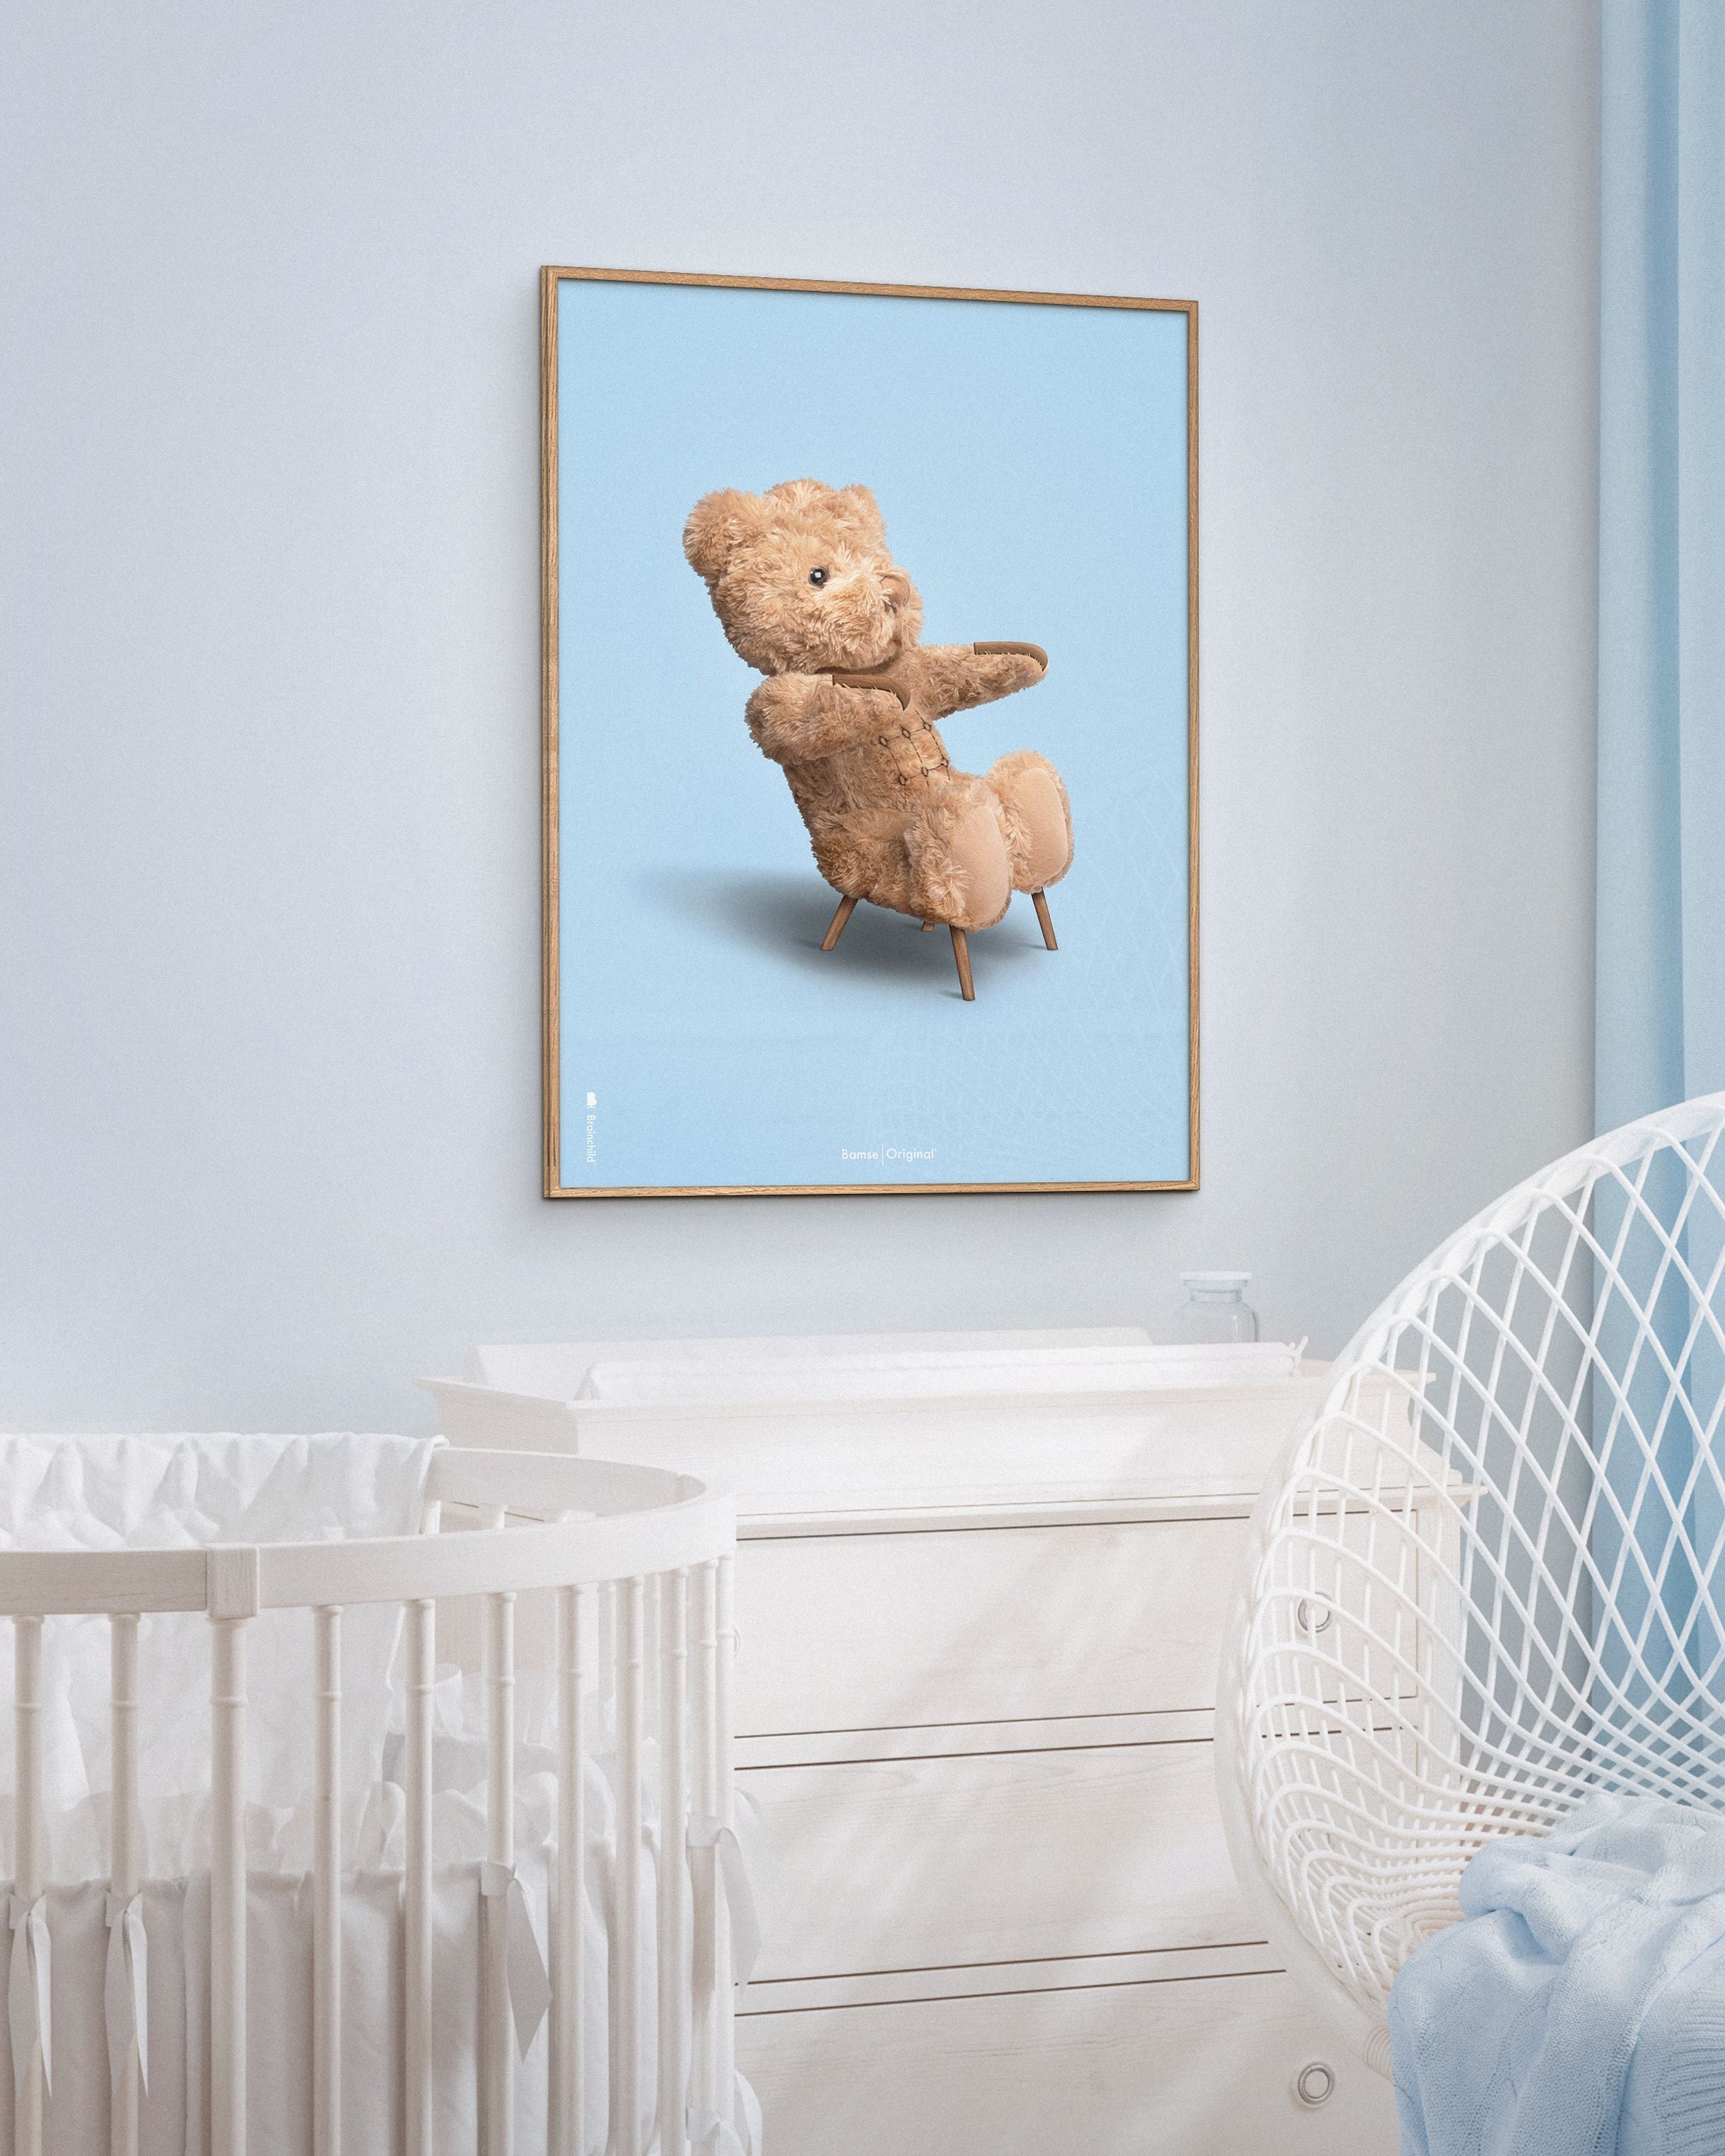 Marco de póster clásico de BrainChild Teddy Bear Hecho de madera oscura Ram 70x100 cm, fondo azul claro